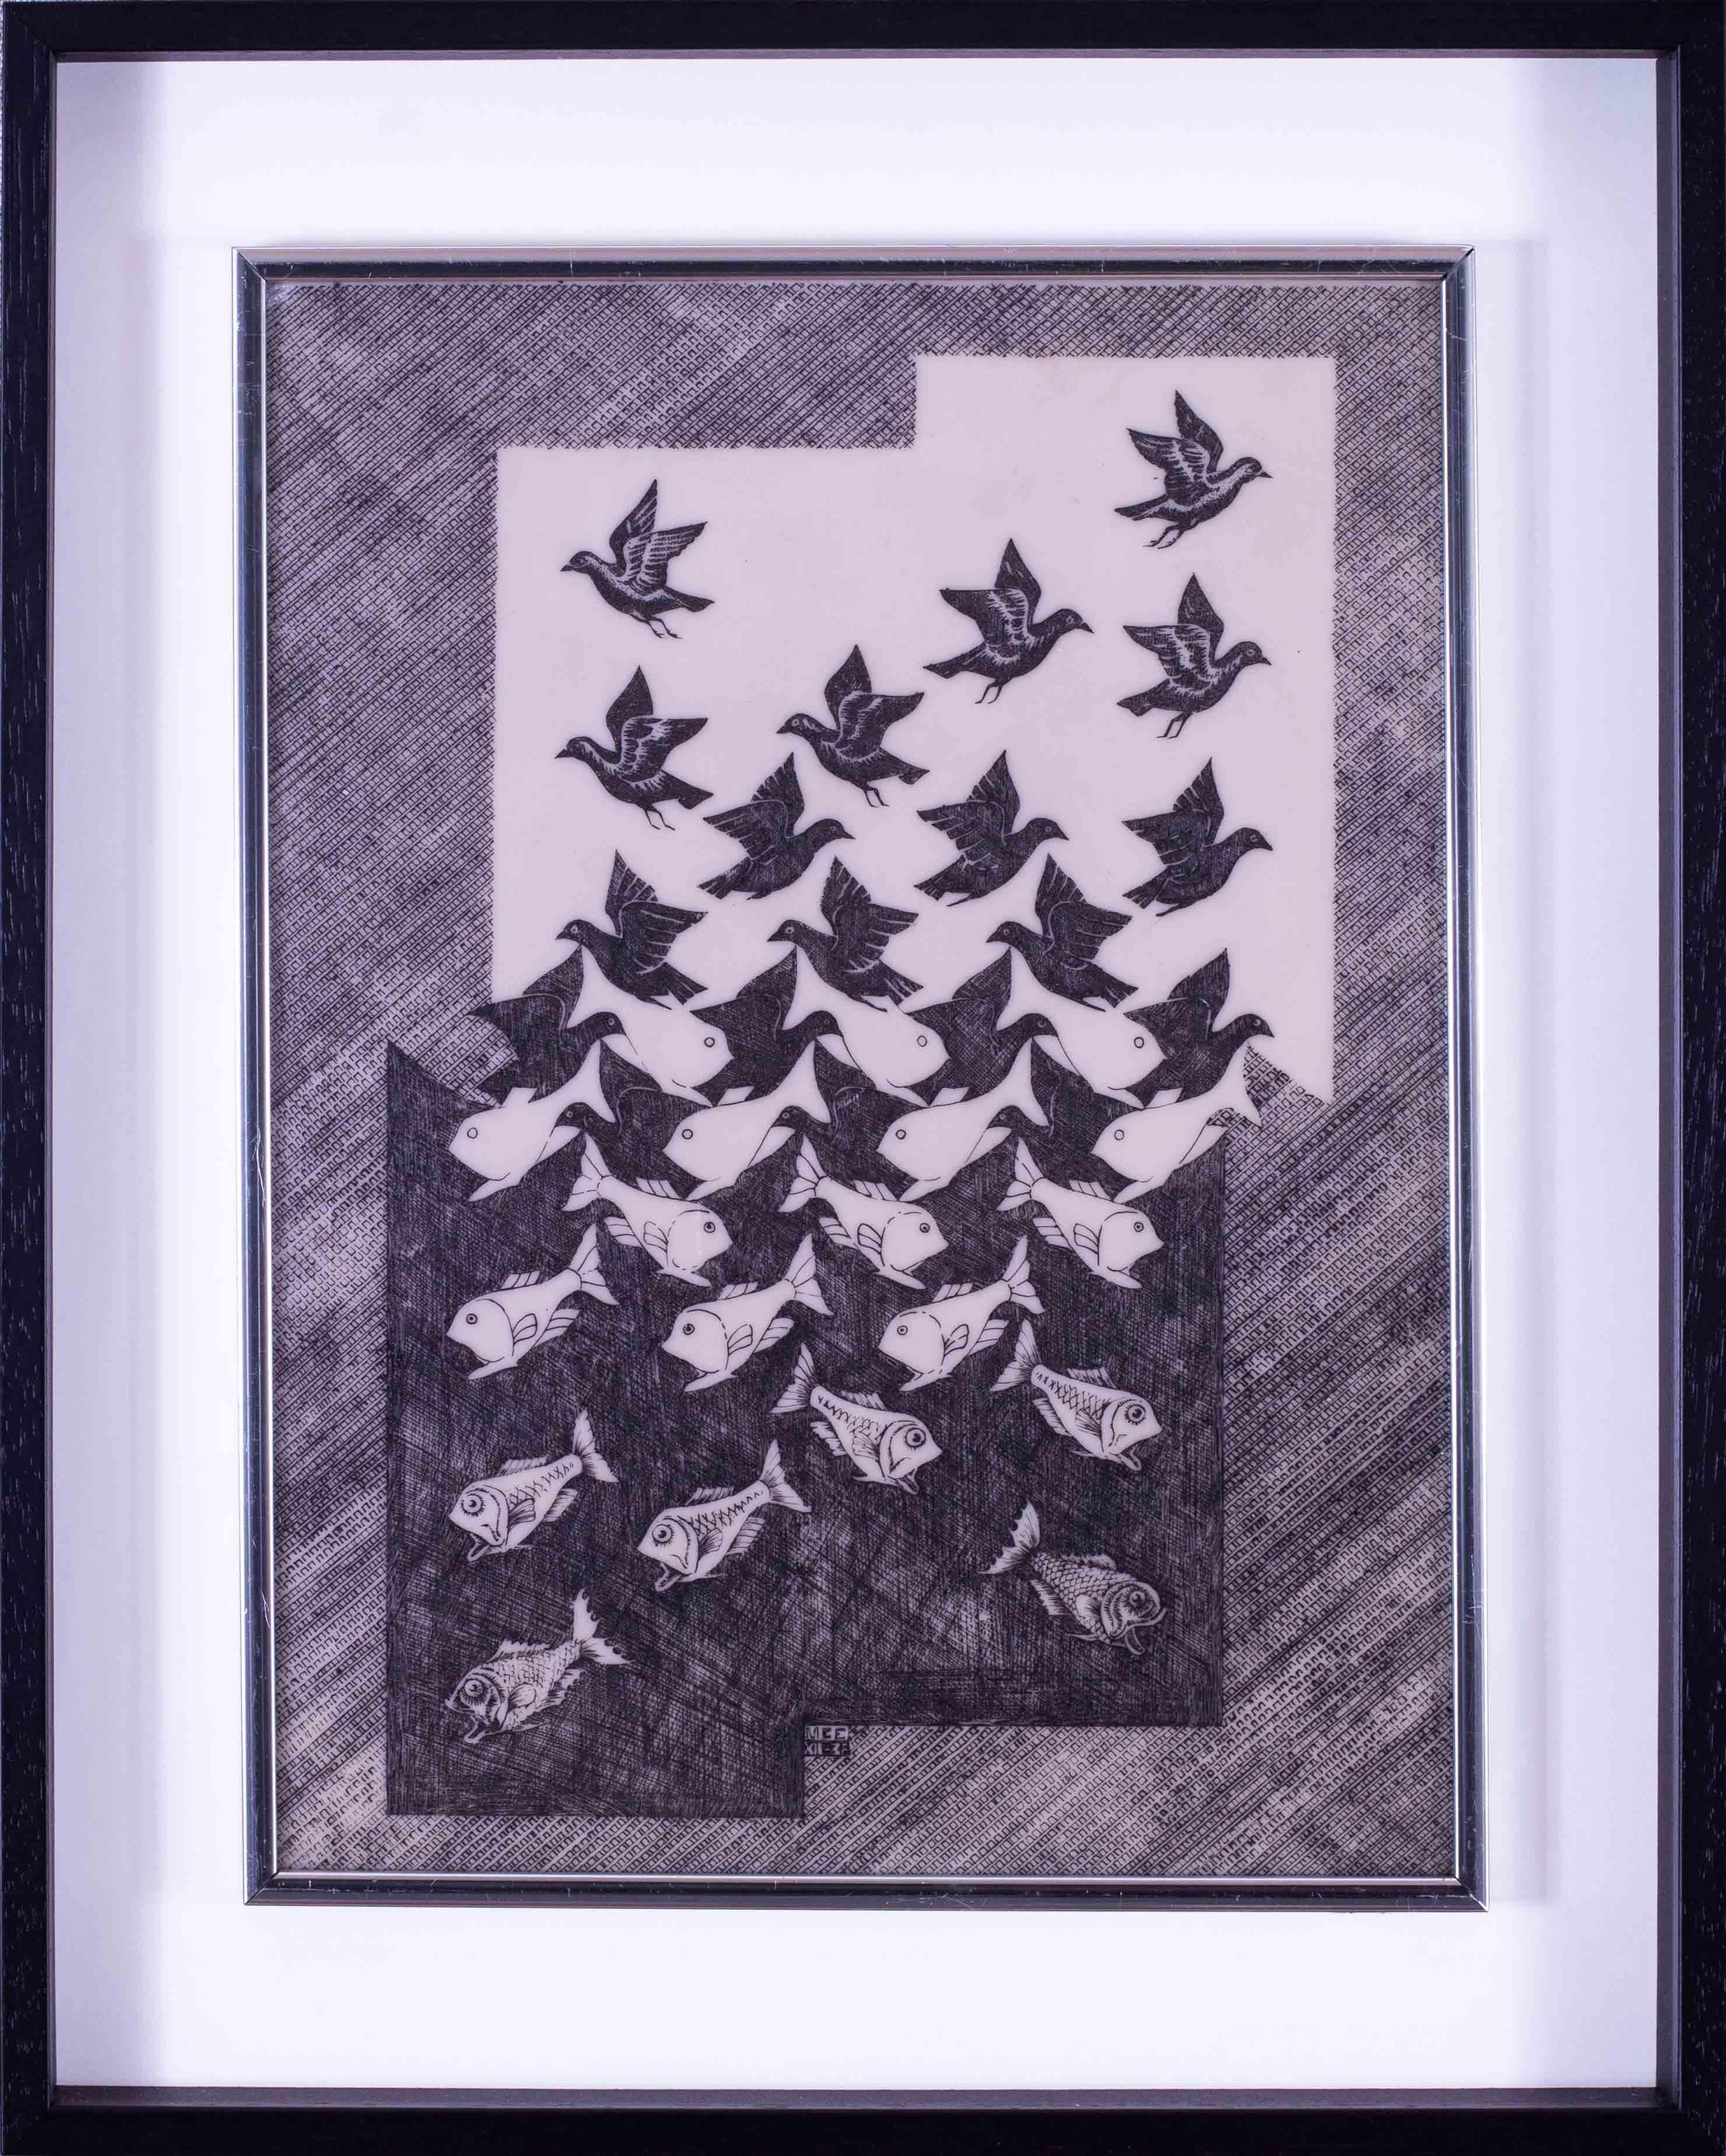 D'après Maurits Cornelis Escher (néerlandais, 1898-1972)
Ciel et eau II
Vinyle imprimé
Une copie des années 1960 de l'original de 1938
21 x 17 in. (53.5 x 43 cm.) au bord extérieur du cadre
